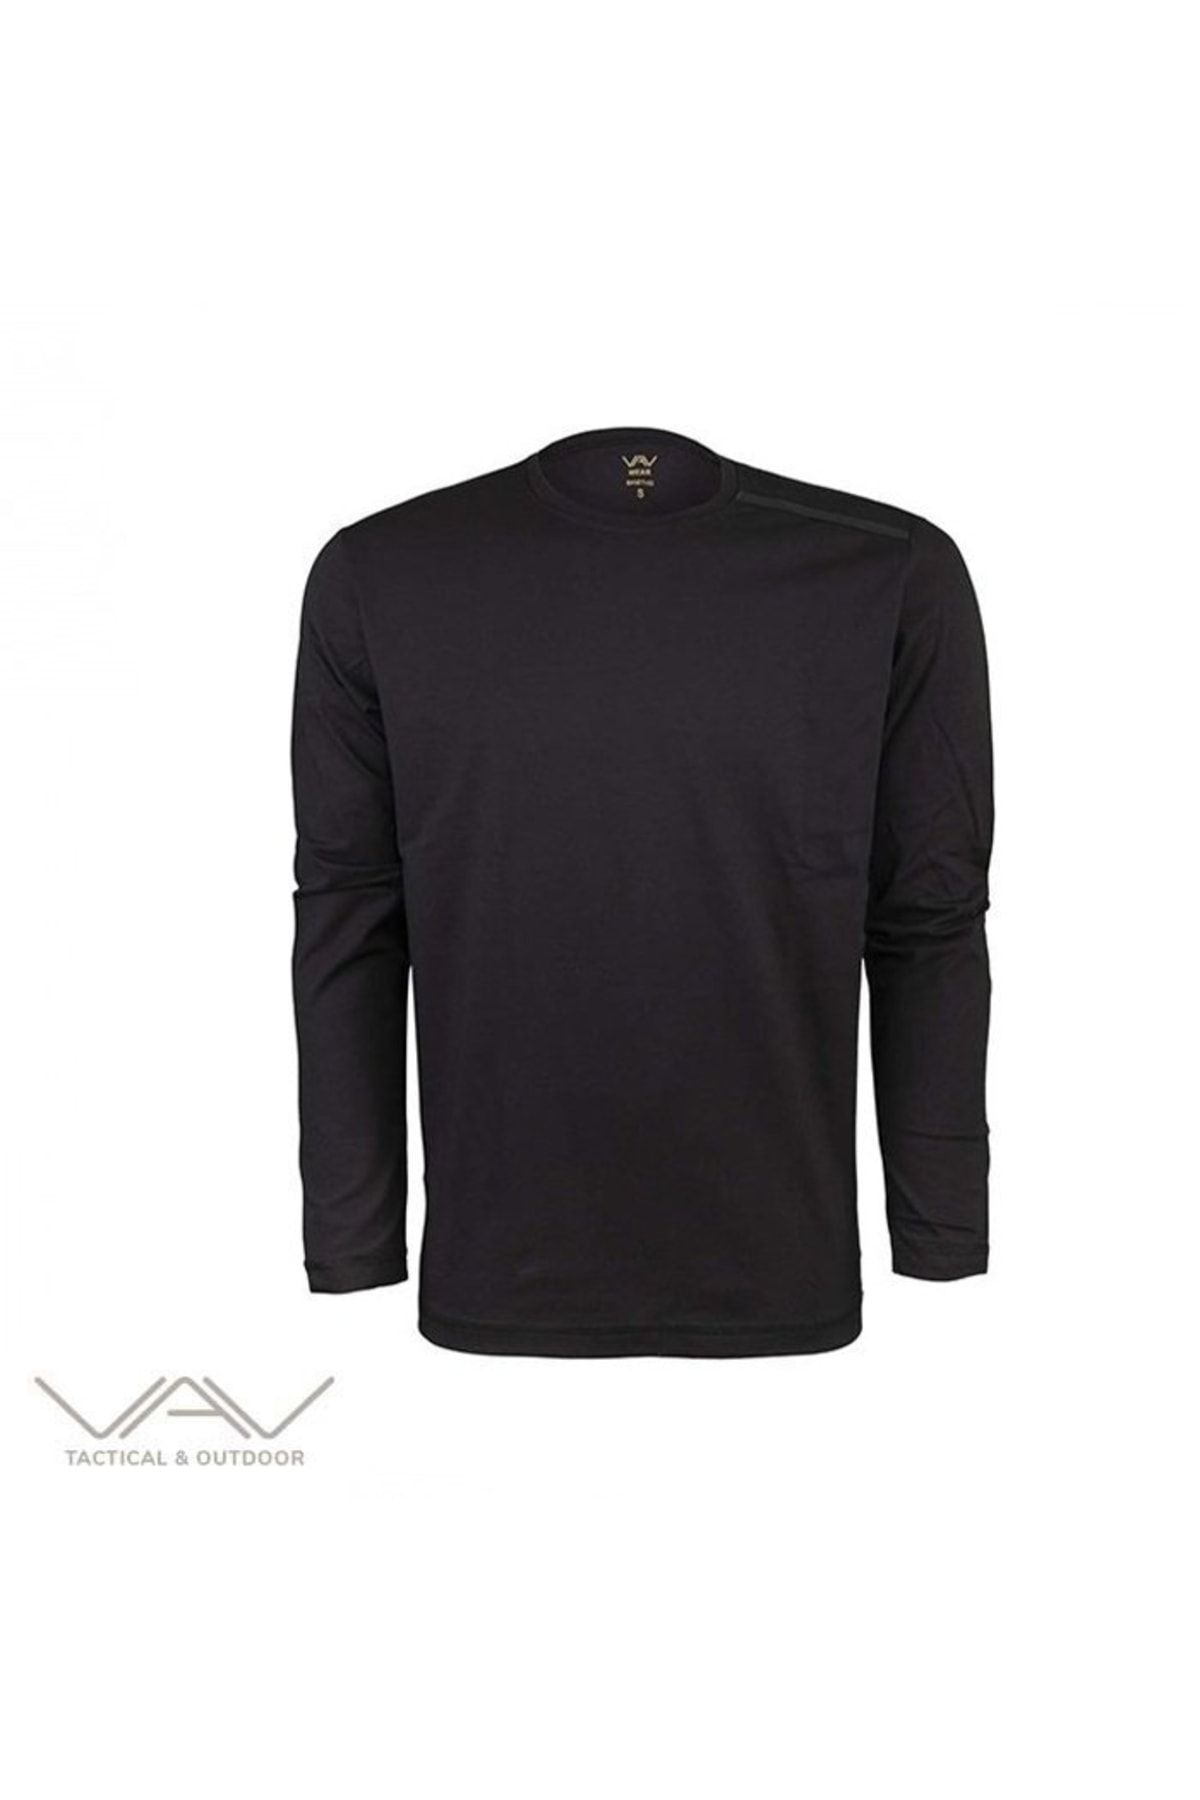 VAV WEAR Vav Baseti-04 Uzun Kol Sweatshirt Siyah L